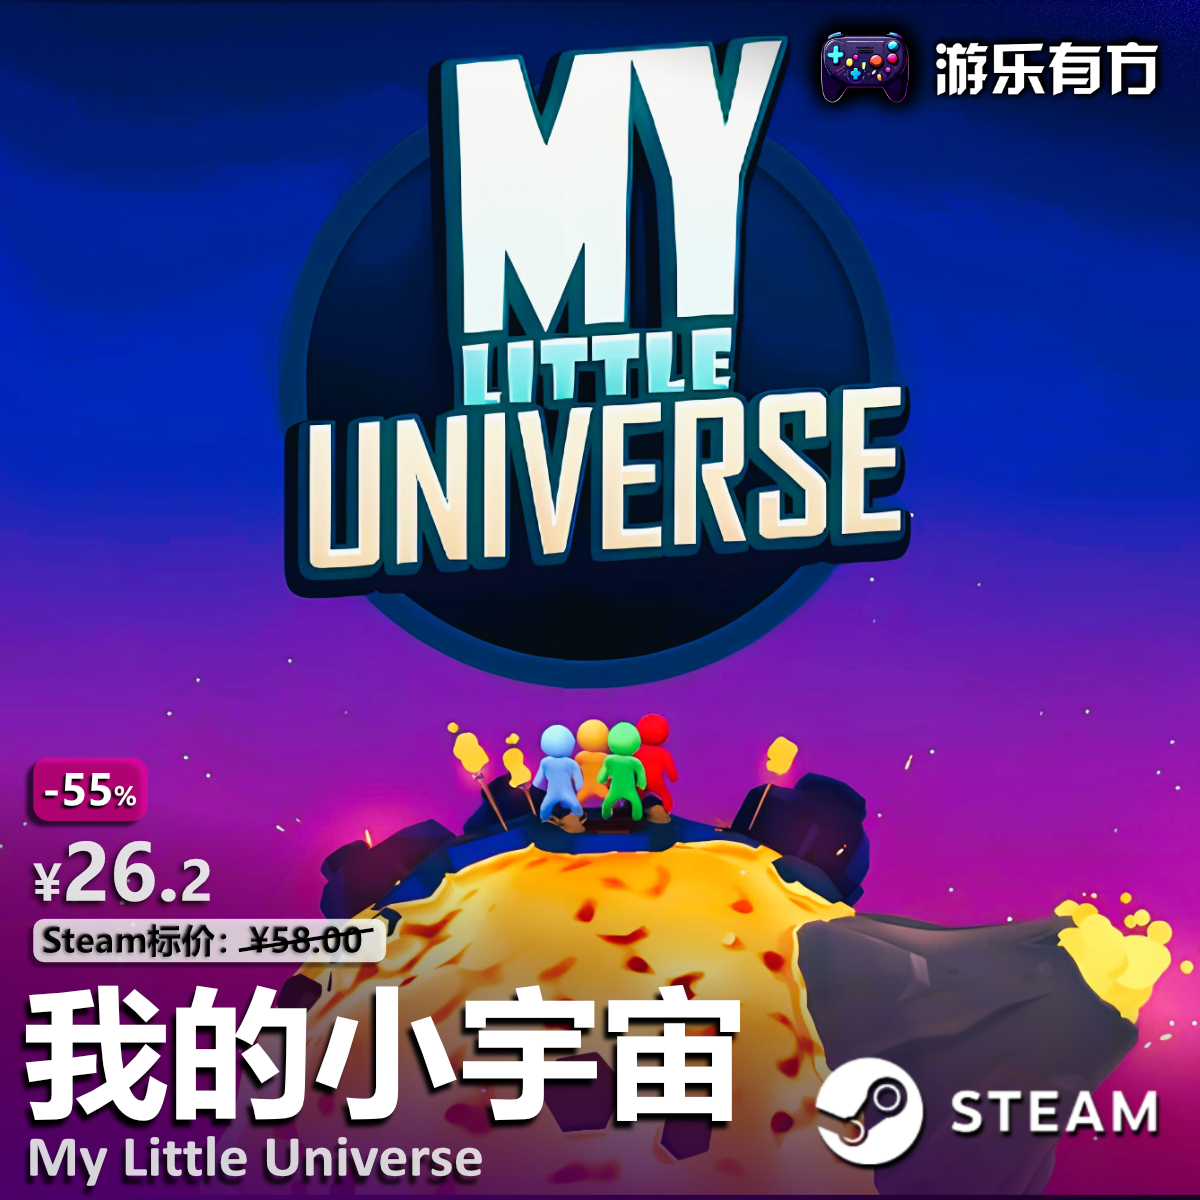 我的小宇宙(My Little Universe)我的世界Steam全球区沙盒创造CDK